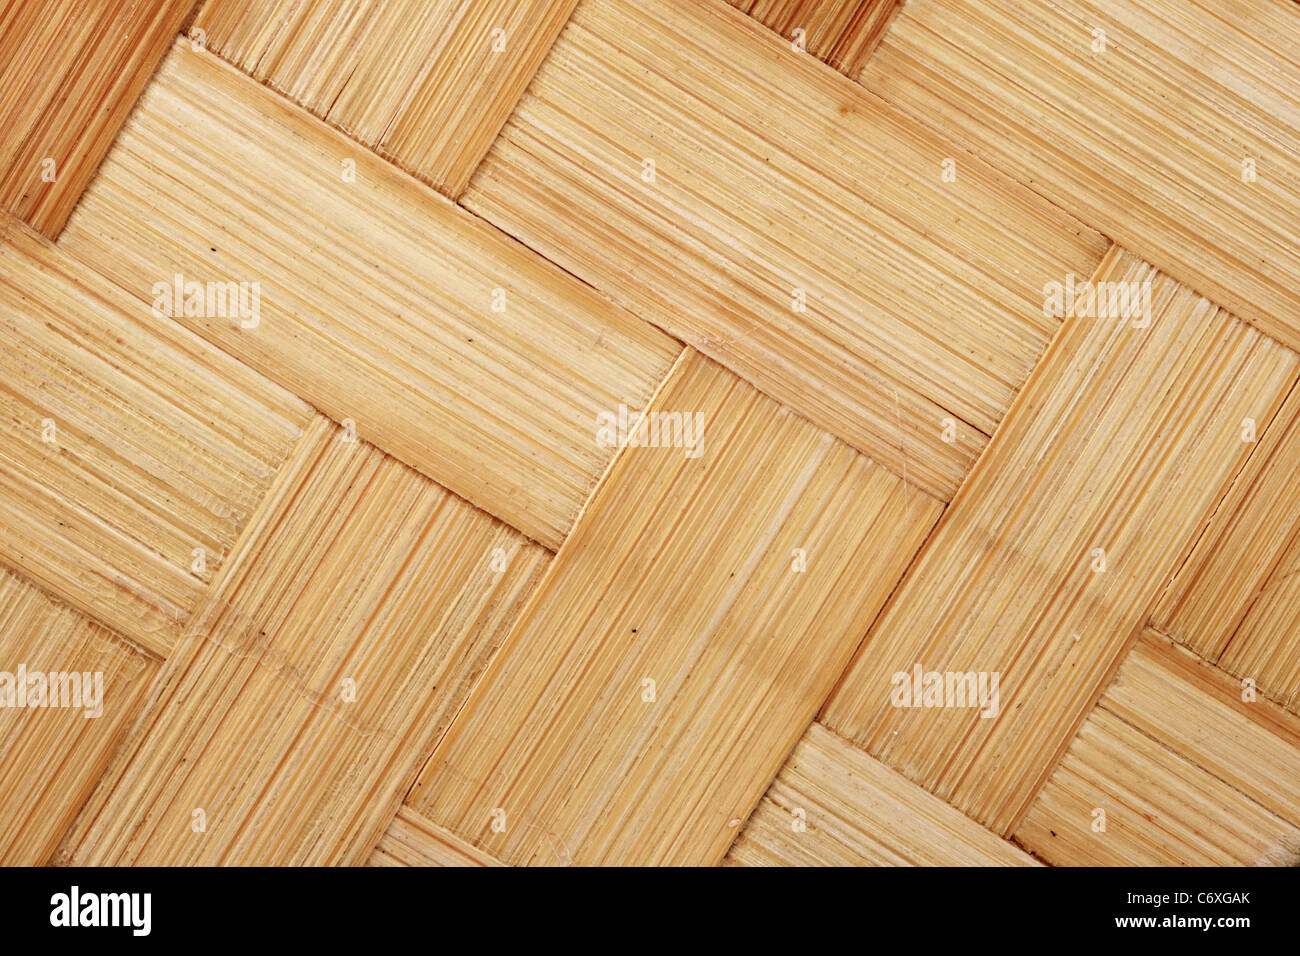 Bandes du bambou tissé en diagonale pour la texture d'arrière-plan Banque D'Images